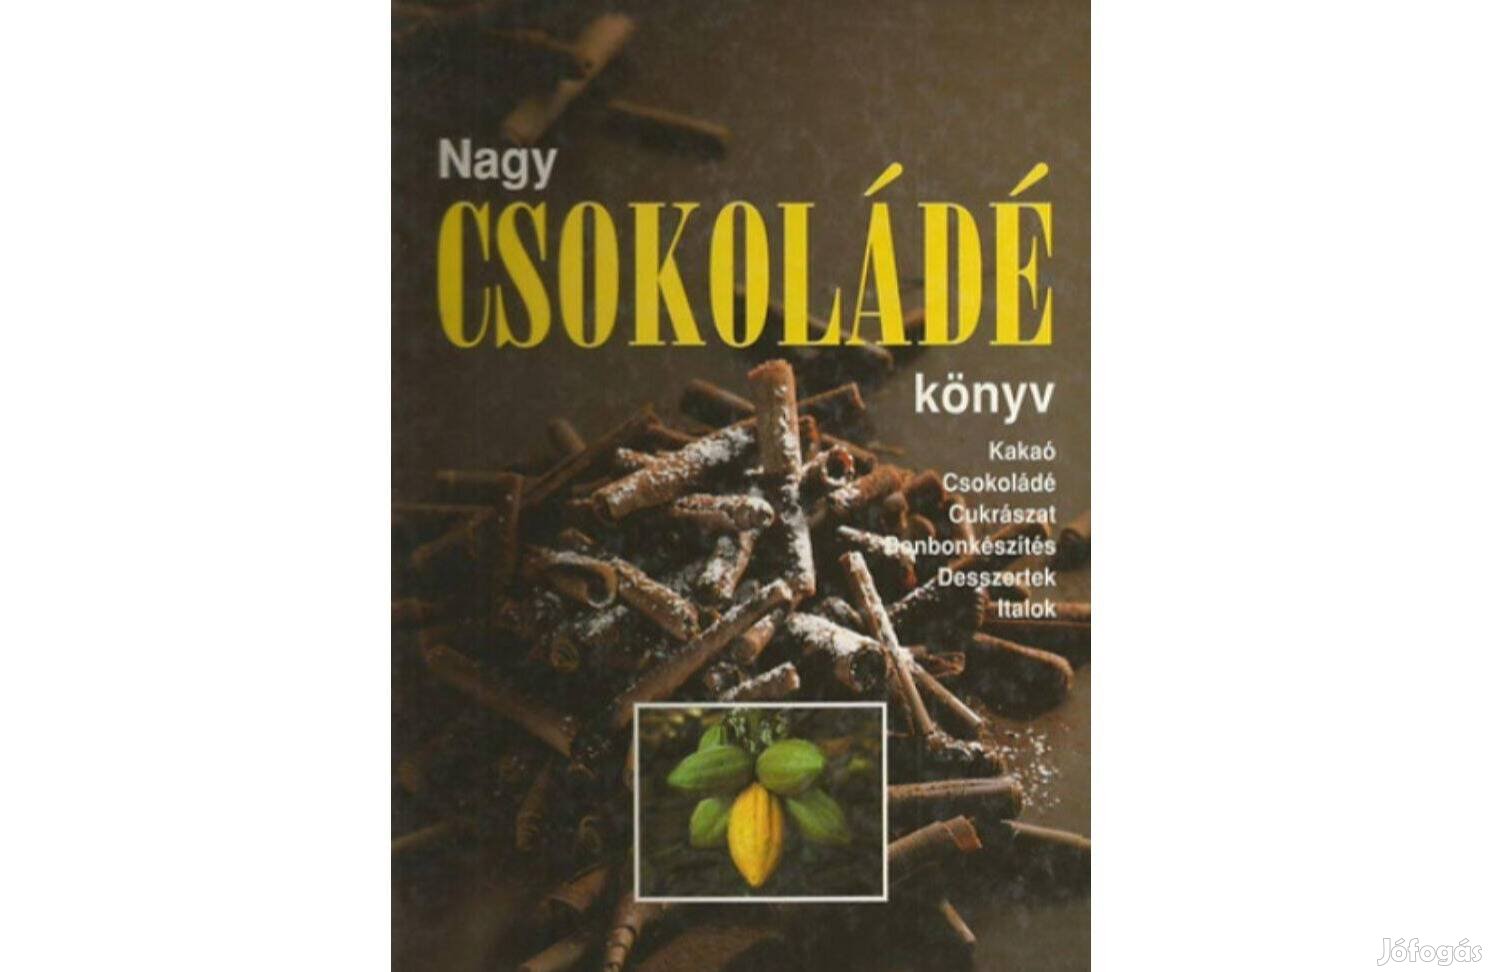 Nagy csokoládé könyv * 2002